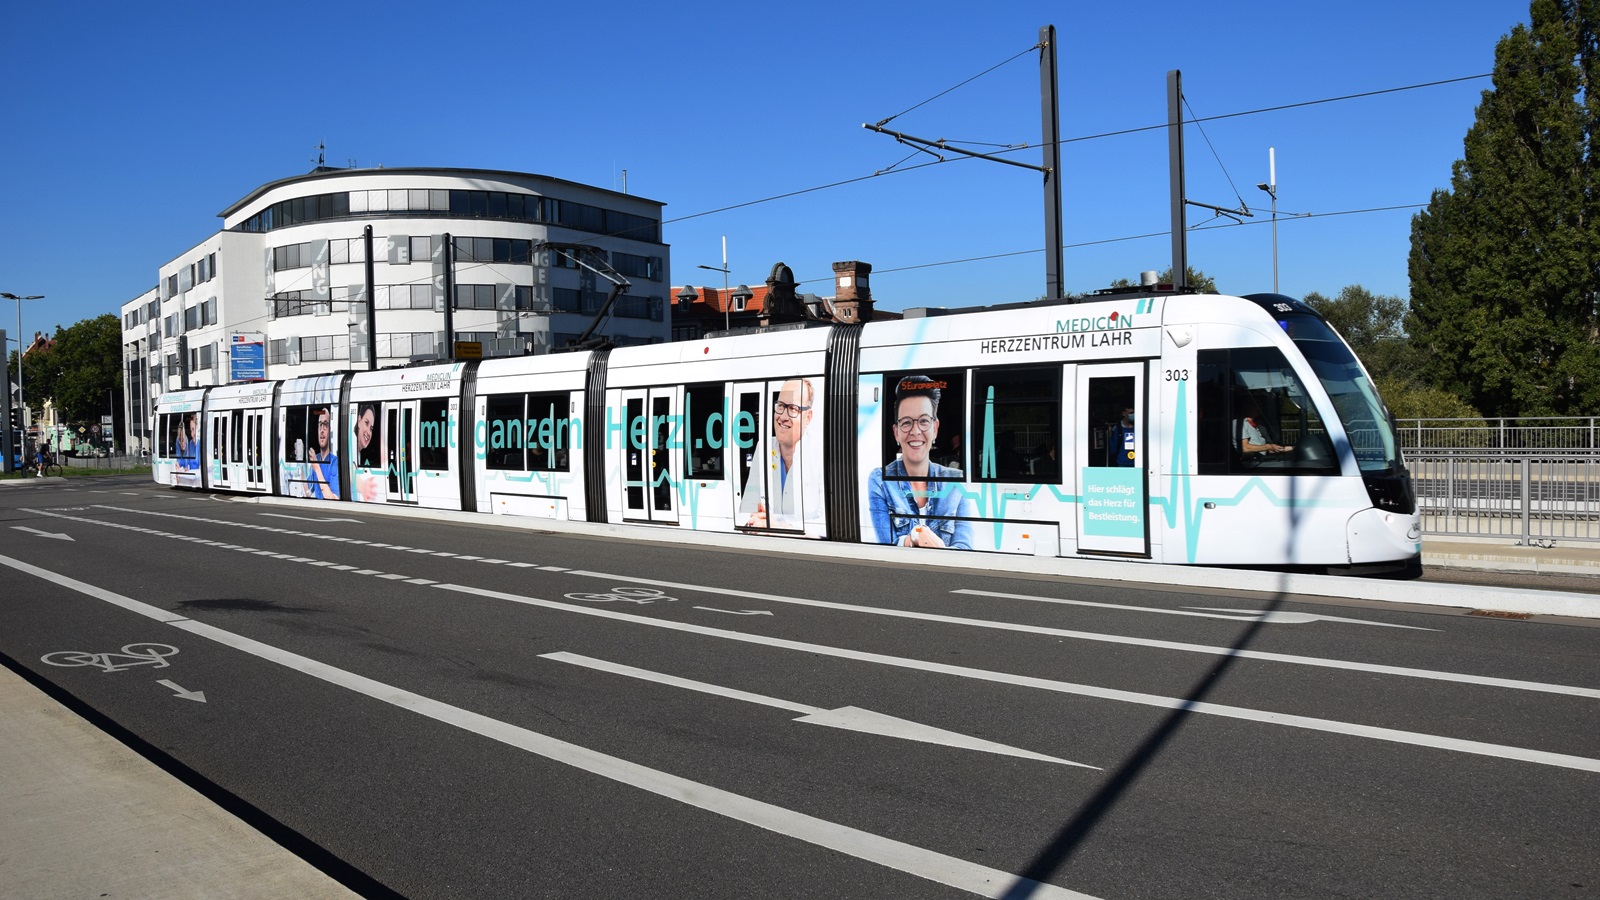 Am 09.09.2020 habe ich diese Straßenbahn mit Hersteller CAF Urbos Nr. 303 in Freiburg im Breisgau aufgenommen.